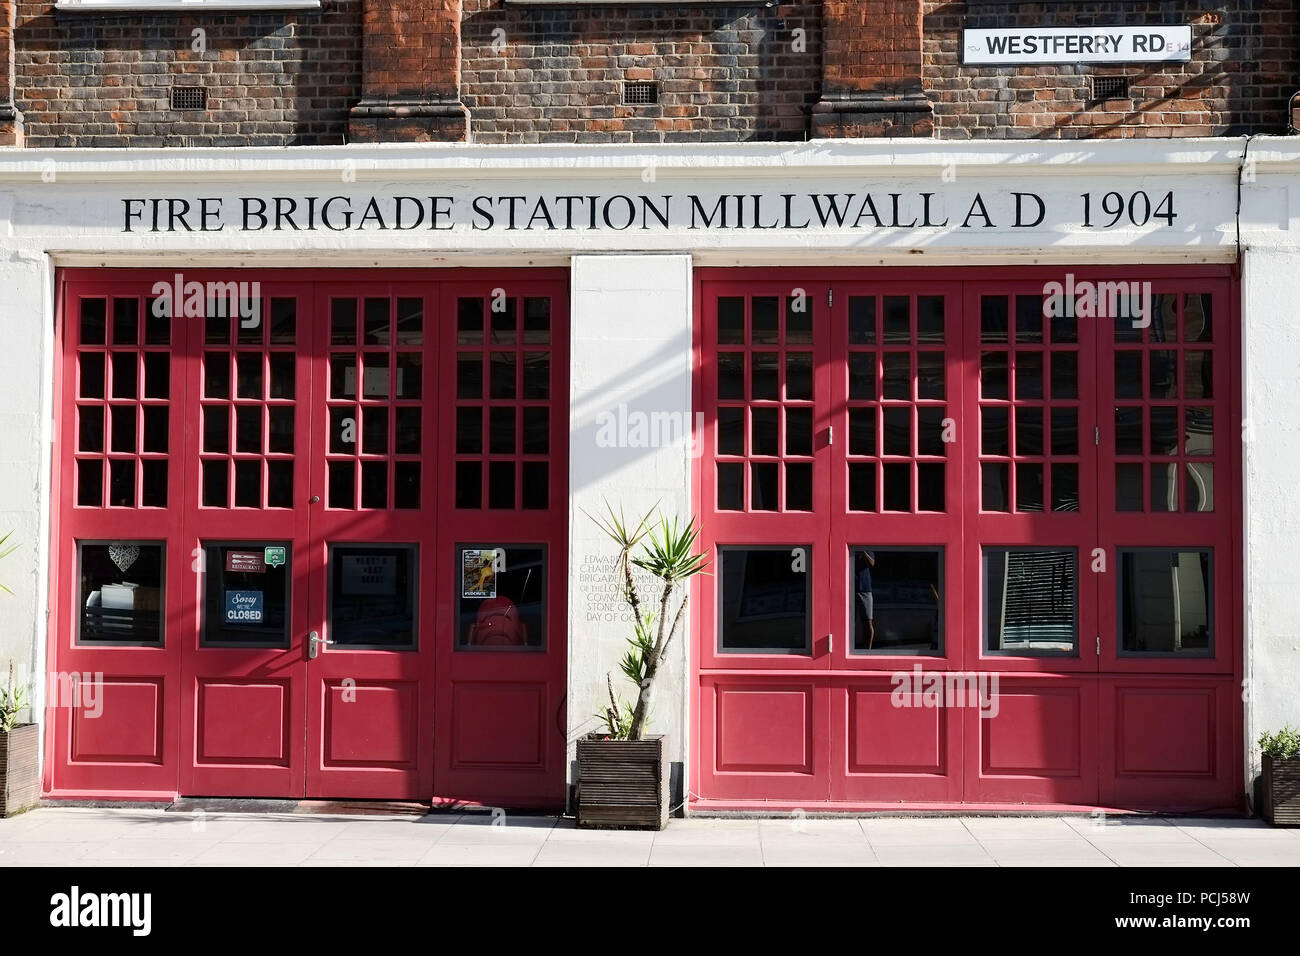 Millwall vecchia stazione antincendio Westferry Road Isle of Dogs London REGNO UNITO Foto Stock